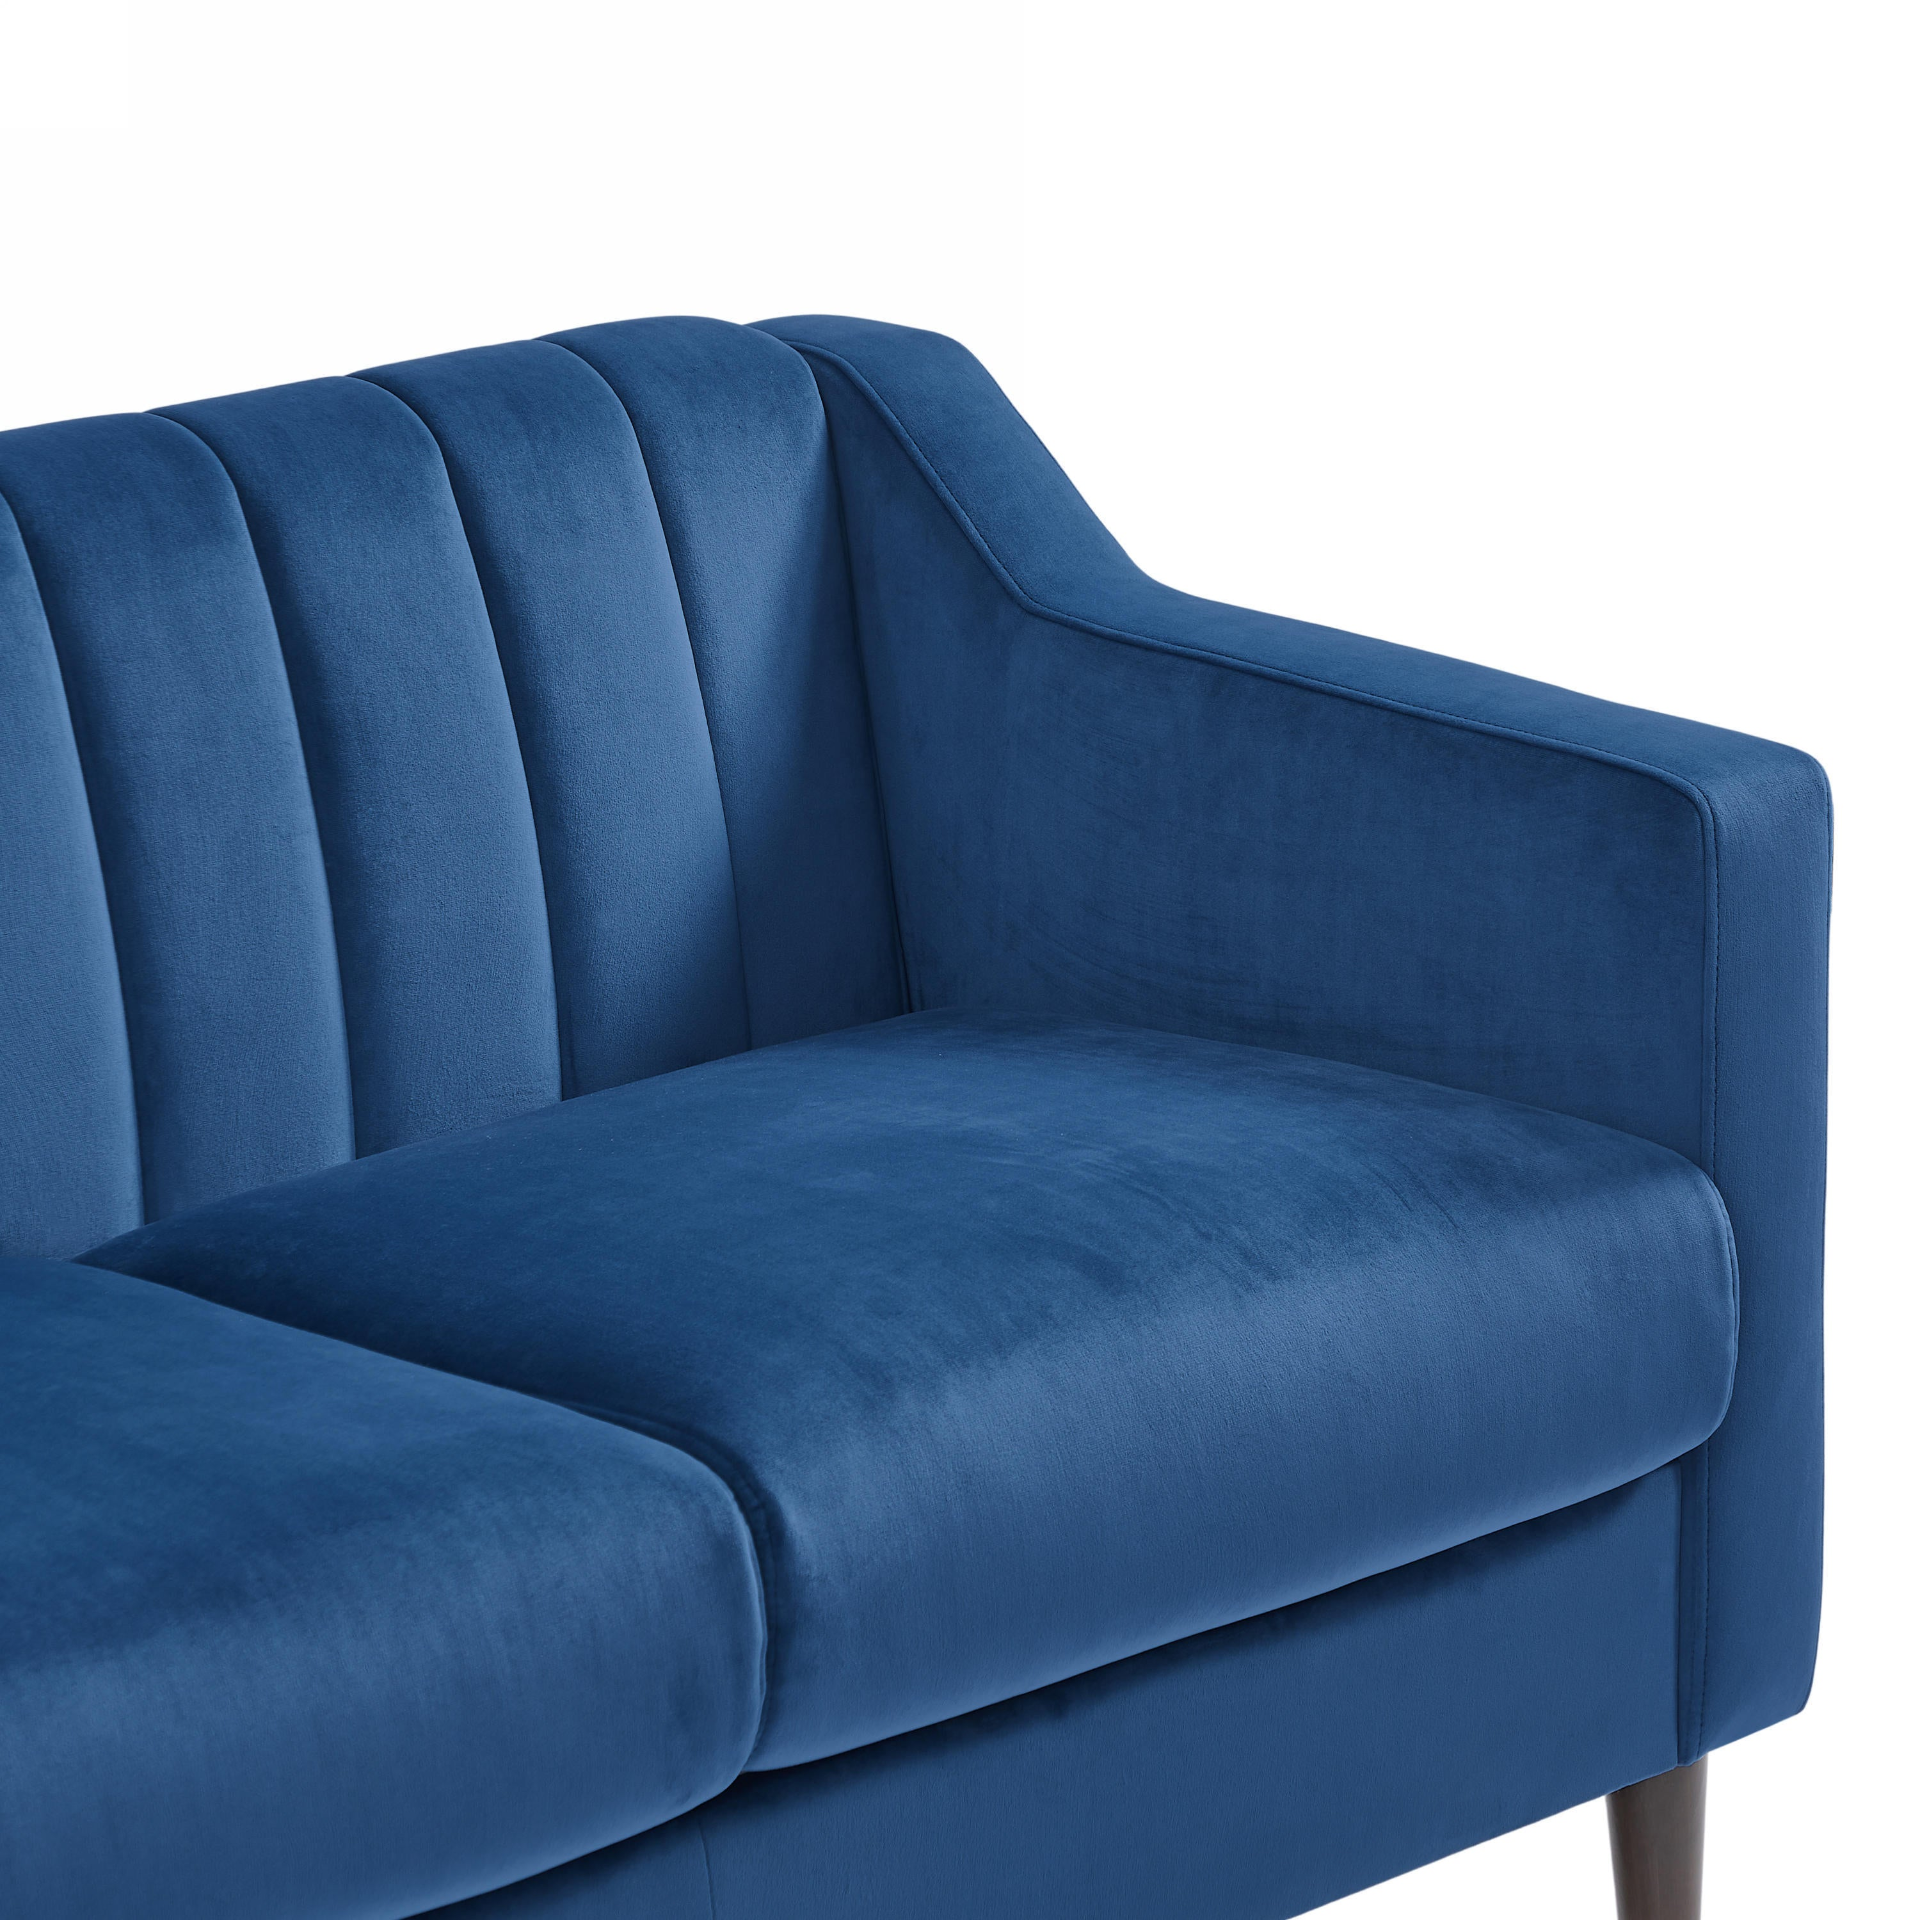 Blue Velvet 3-Seat Upholstered Sofa with Wooden Legs (77"x28")